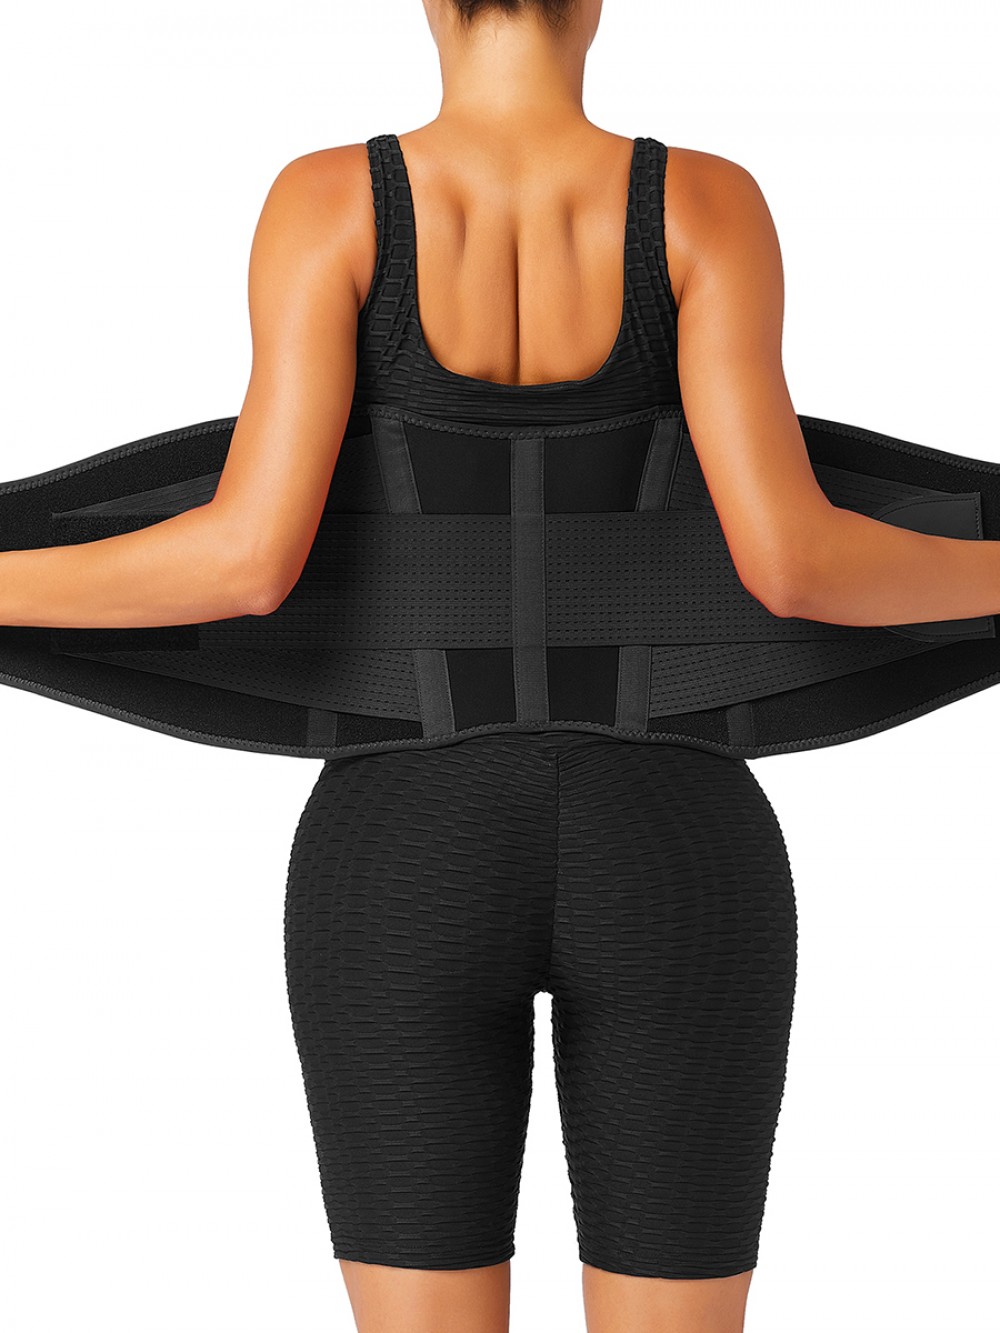 Black 5 Plastic Bones Neoprene Waist Trainer Belt For Fitness